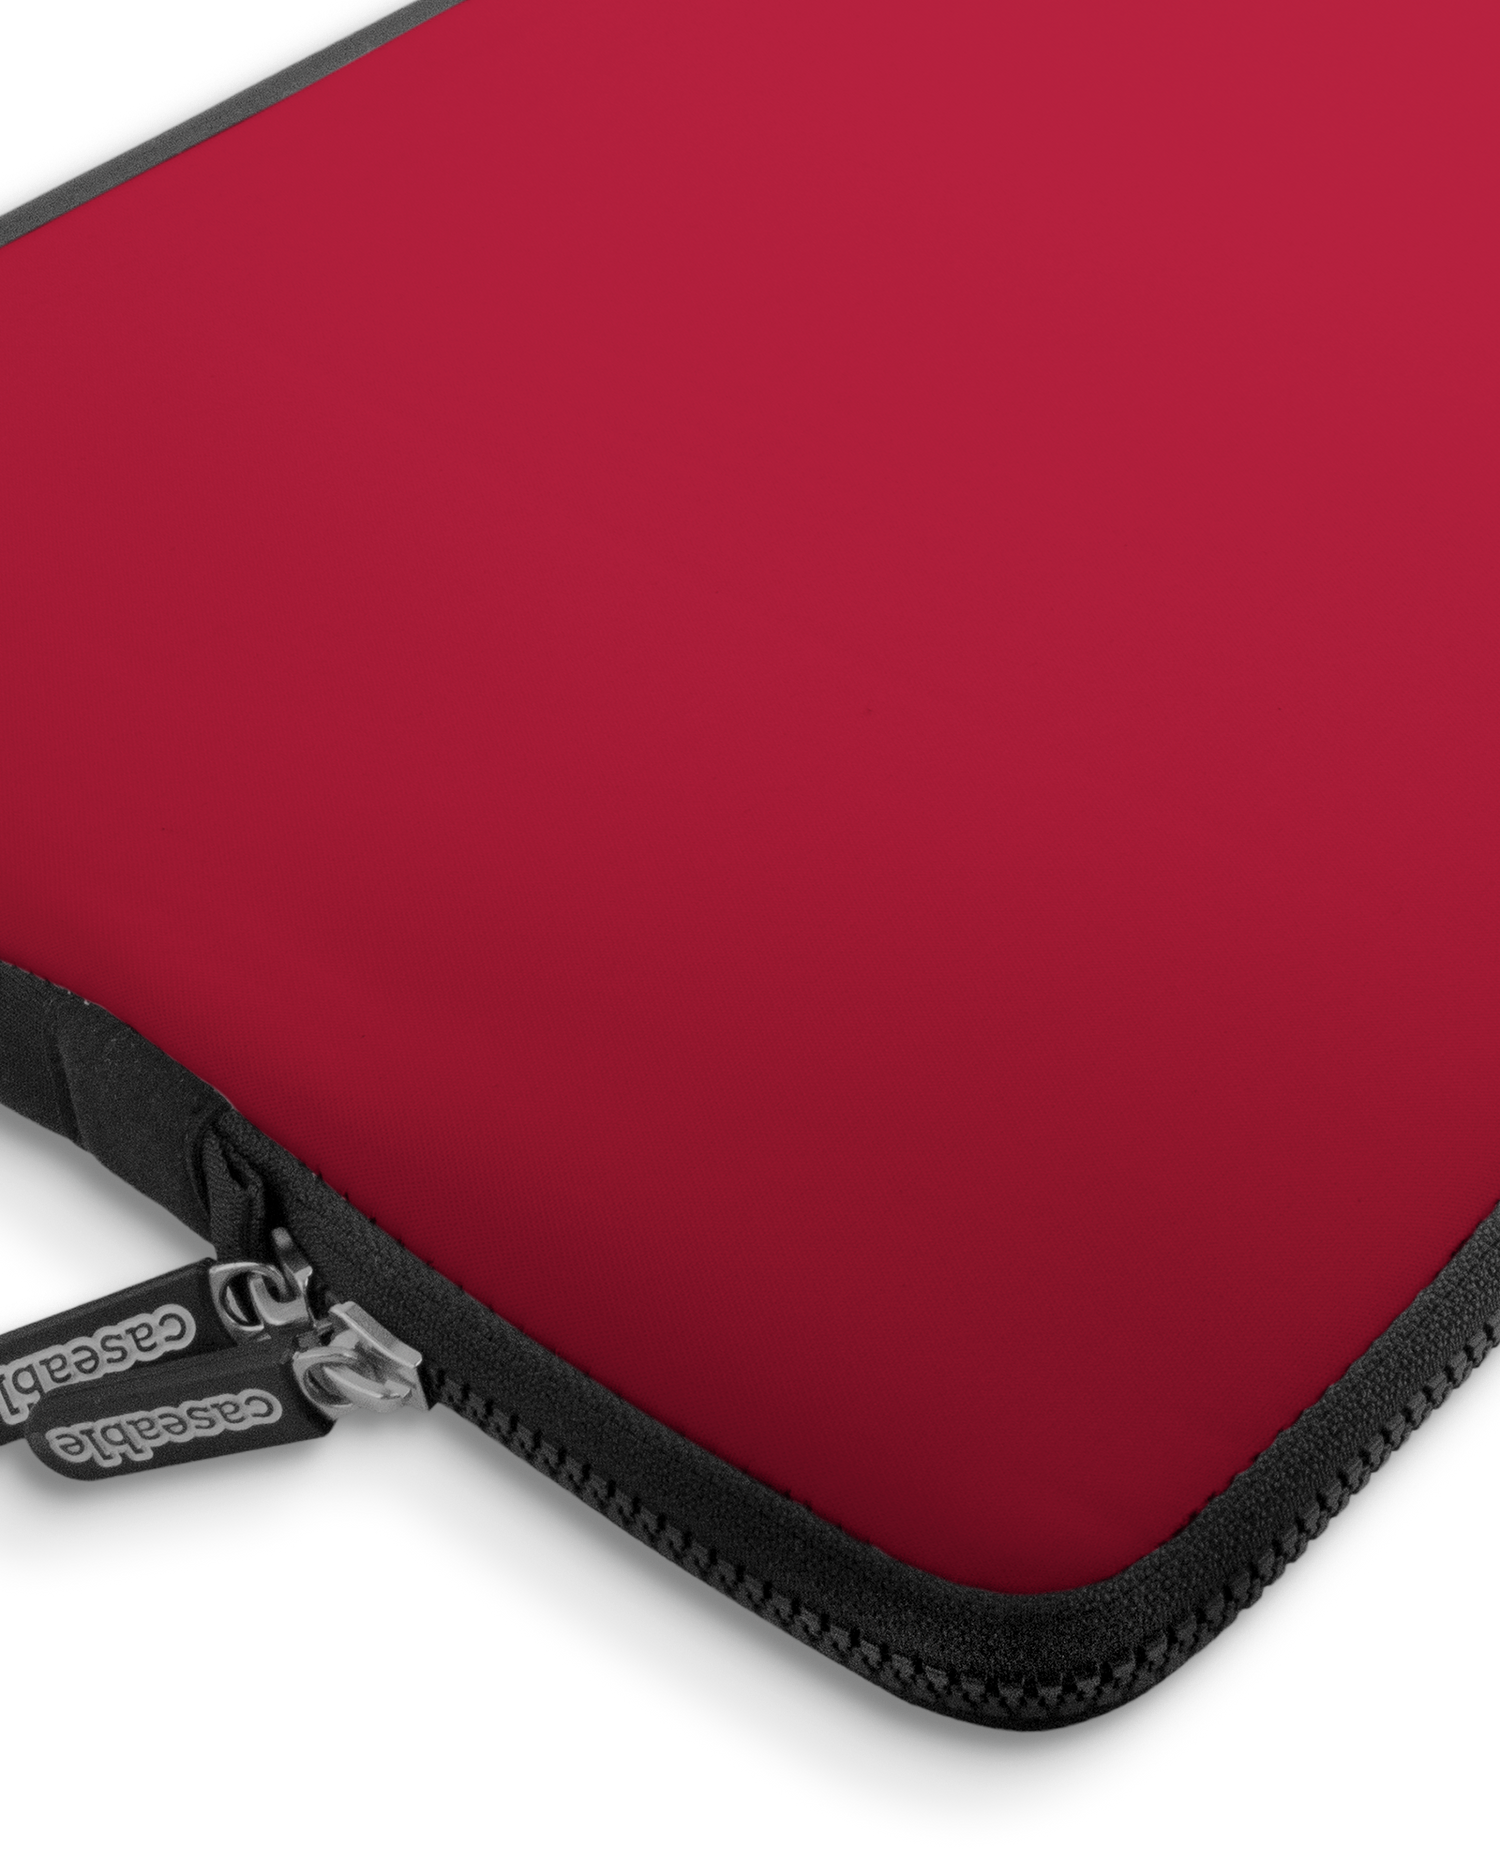 RED Premium Laptoptasche 17 Zoll mit Gerät im Inneren